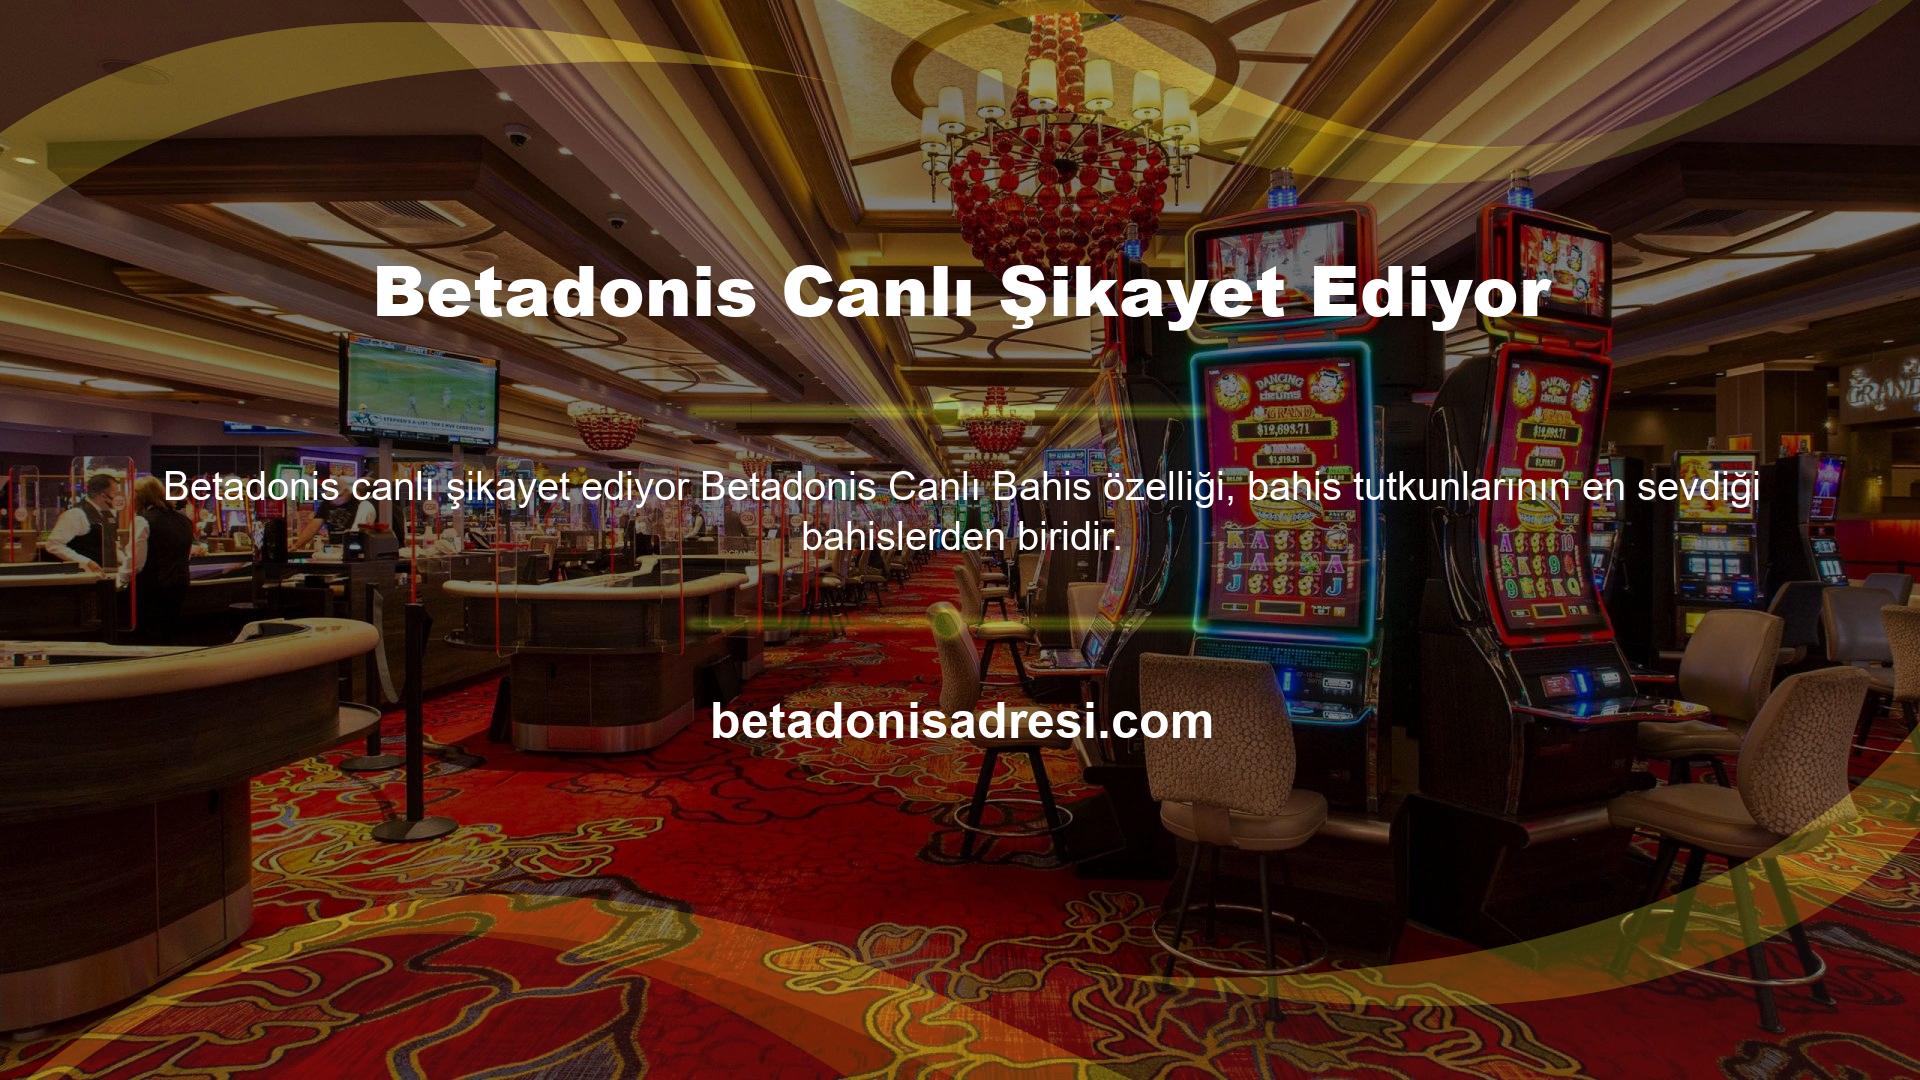 Betadonis casino sitesi, Avrupa ve Türkiye'de casino hizmetleri sunmaktadır